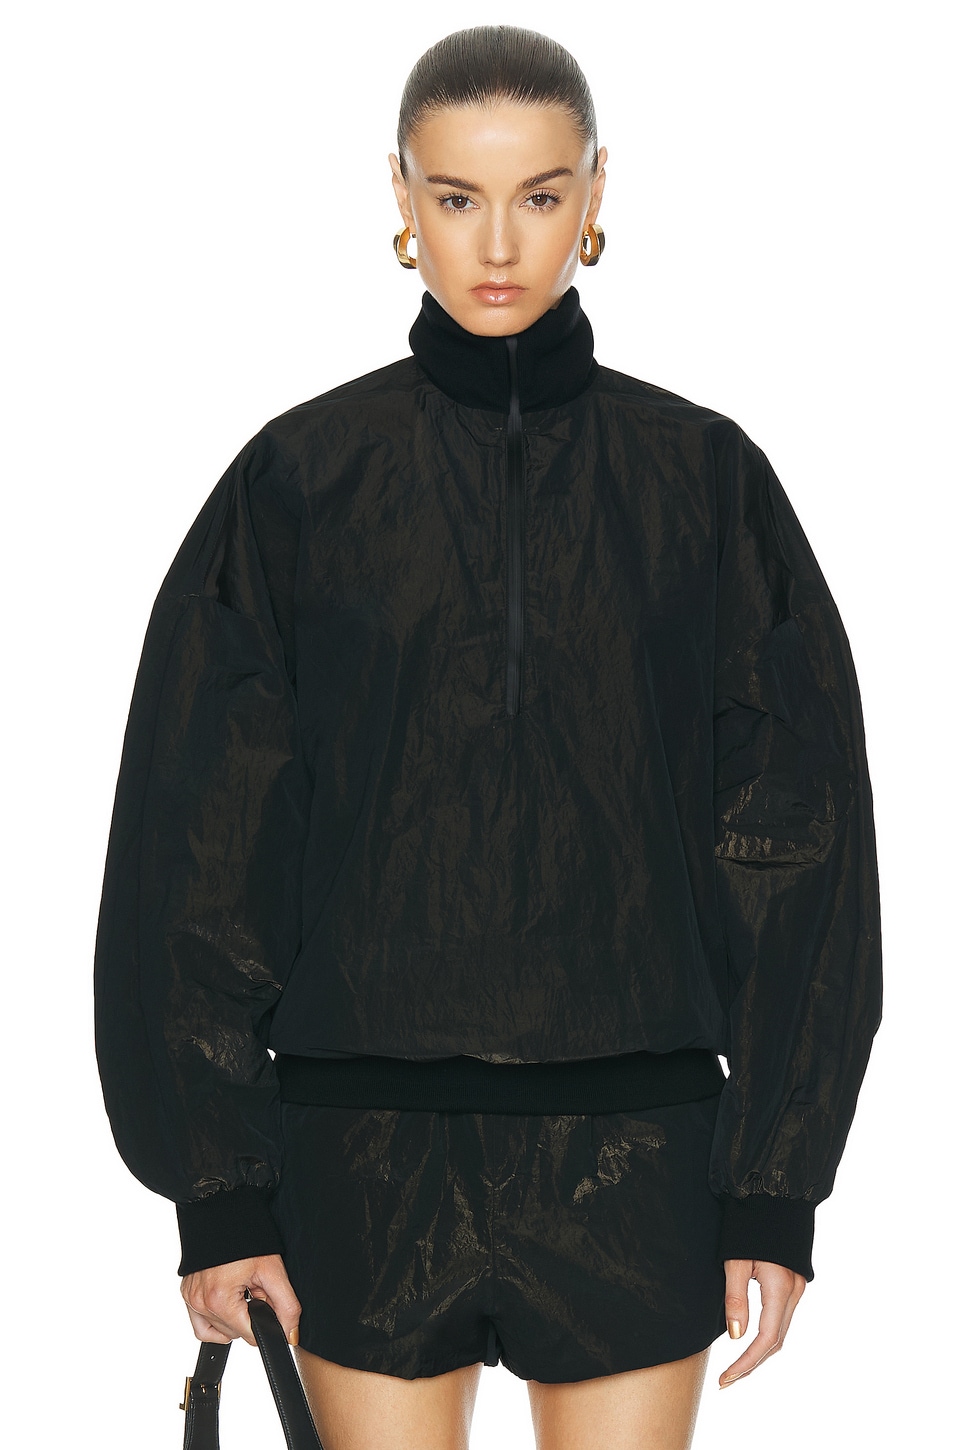 Image 1 of Fear of God Wrinkled Polyester Half Zip High Neck Track Jacket in Black